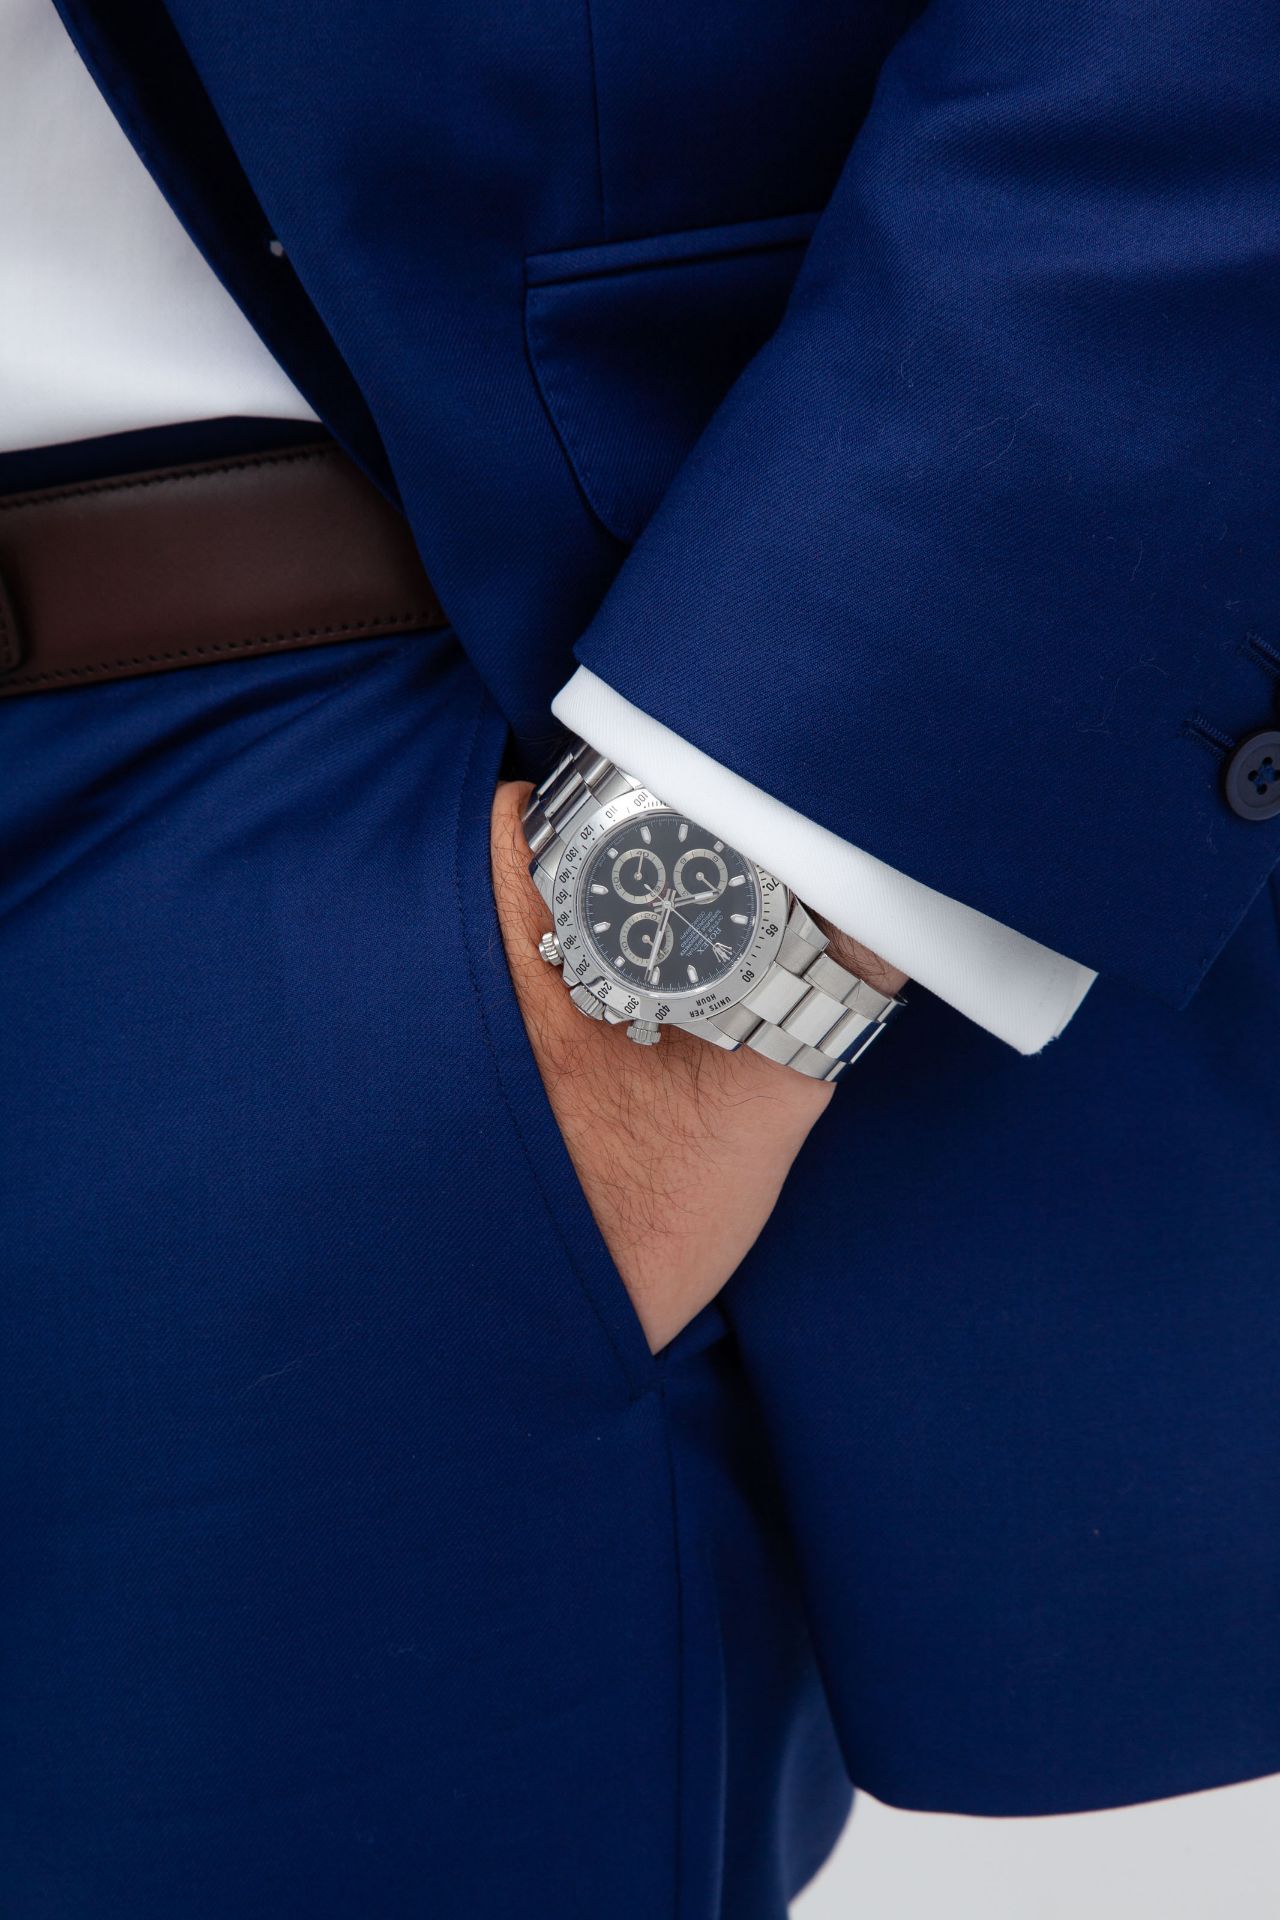 Rolex, Daytona, réf. 116520/2100, montre-bracelet chronographe en acier, circa 2008 - Image 4 of 4